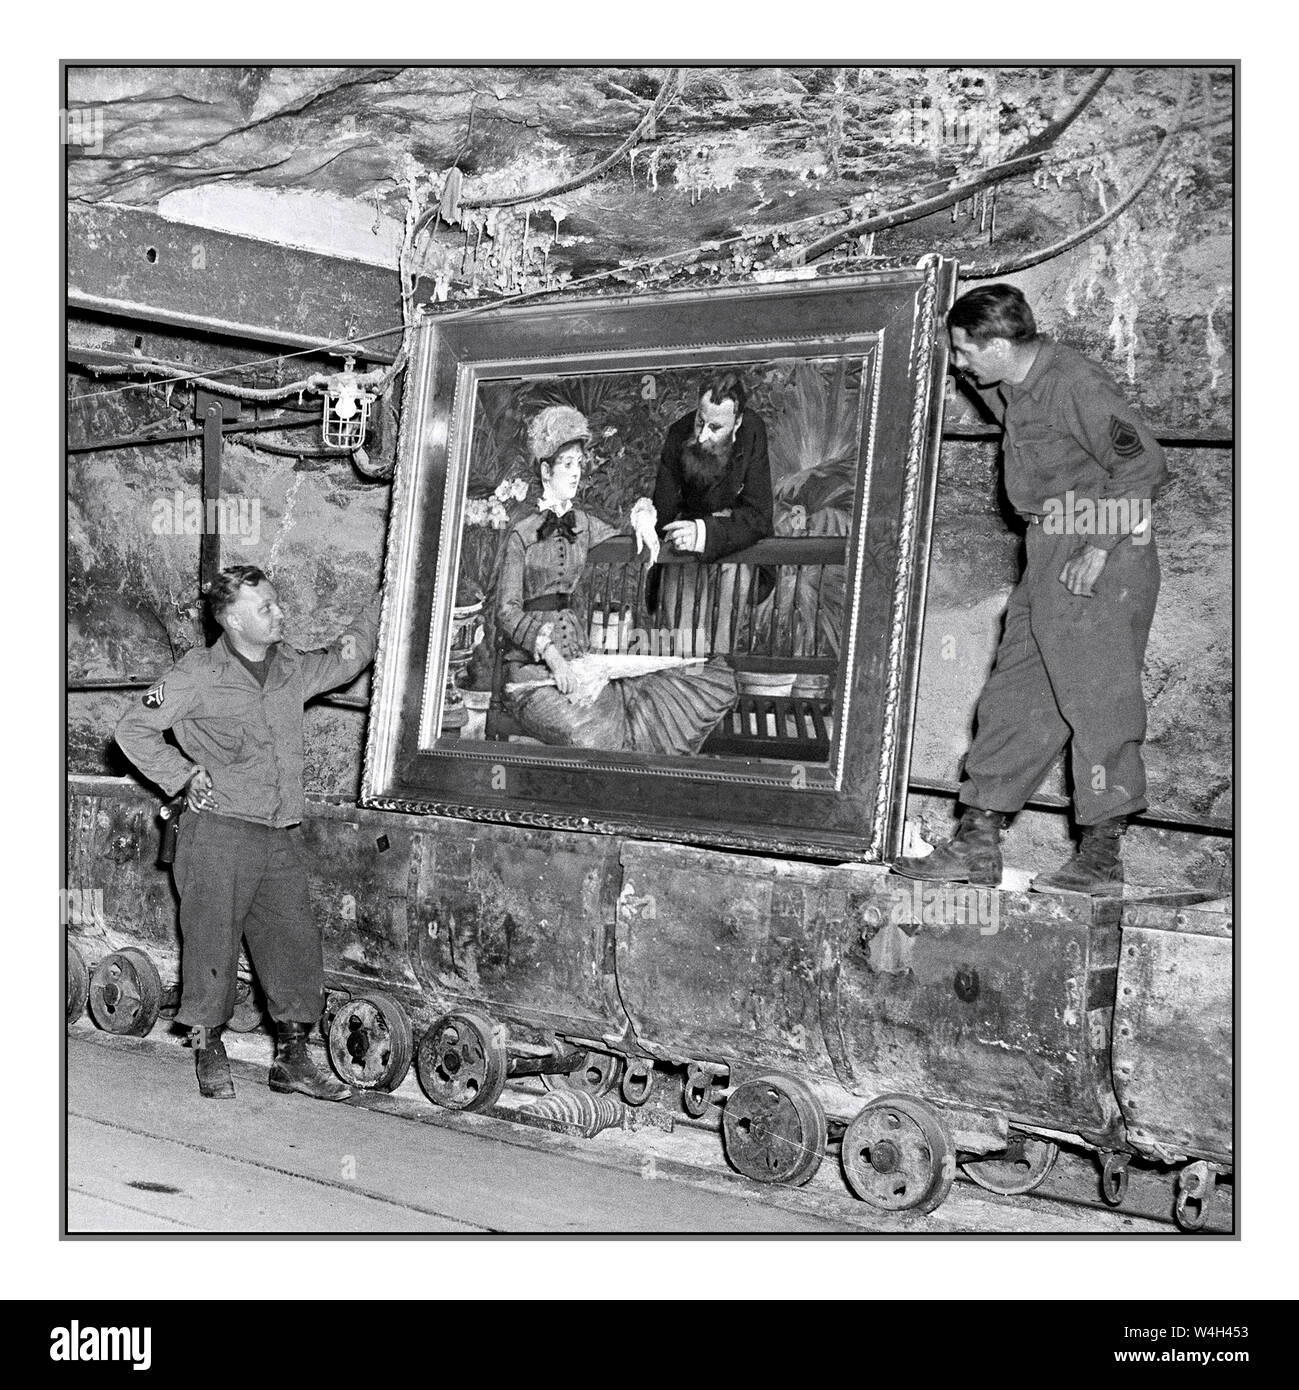 Bottino nazista vintage del dopoguerra trovato a Merkers, Germania i soldati statunitensi esaminano un famoso dipinto, "nel giardino d'inverno" di MANET, Edouard" dell'impressionista francese Edouard Manet, nella collezione di ricchezza di Reichbank, bottino delle SS e dipinti rimossi dai nazisti da Berlino a una volta in una miniera di sale. Il 90th Div, la terza Armata degli Stati Uniti, scoprì l'oro e altri tesori. 04/15/45 fotografo: CPL. Ornitz Foto Stock